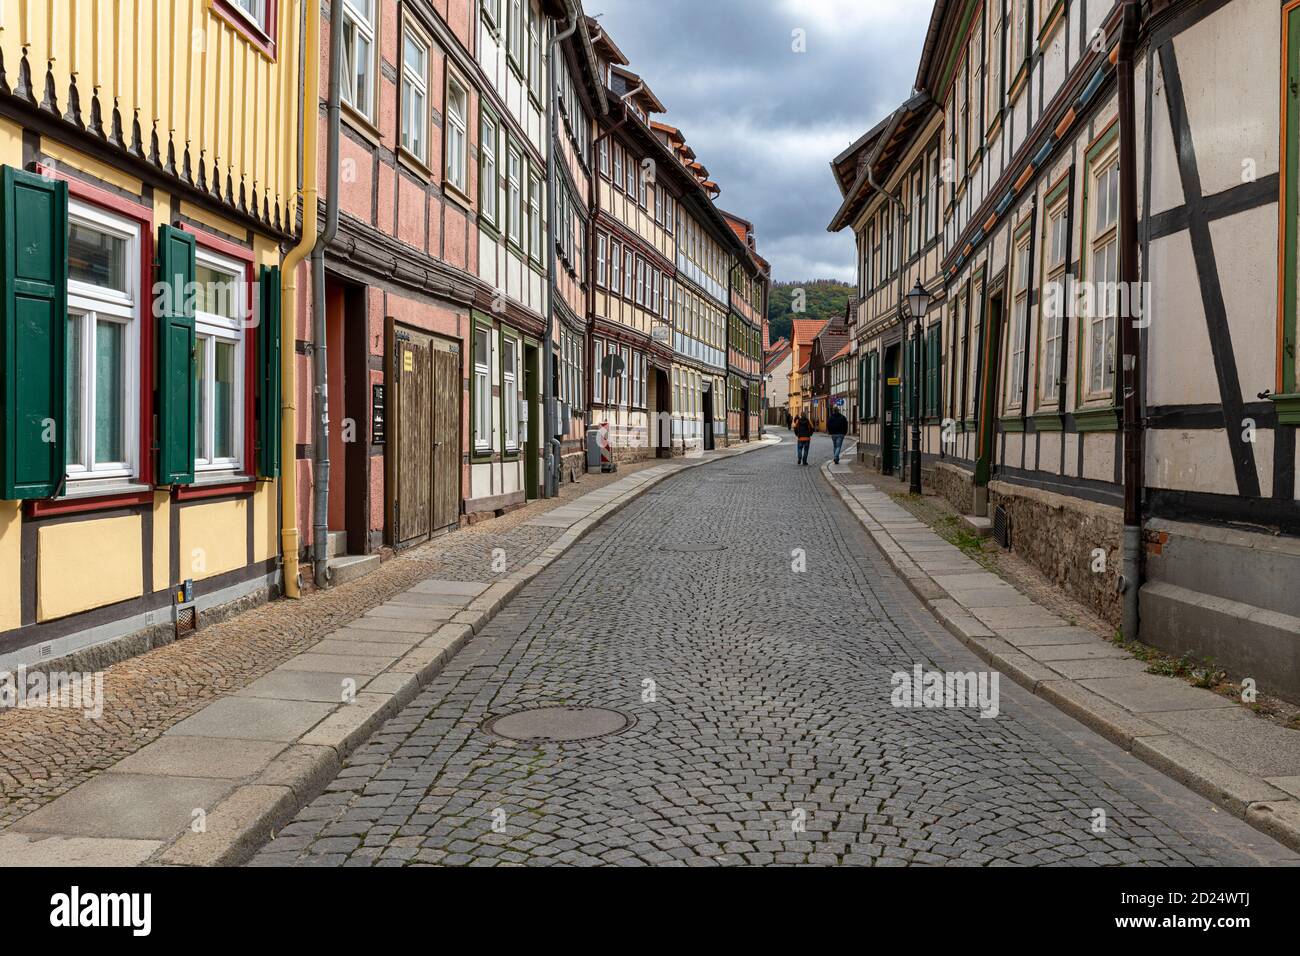 Wernigerode est une ville médiévale au pied des montagnes de Harz. Les bâtiments historiques et les rues étroites attirent les touristes toute l'année. Banque D'Images